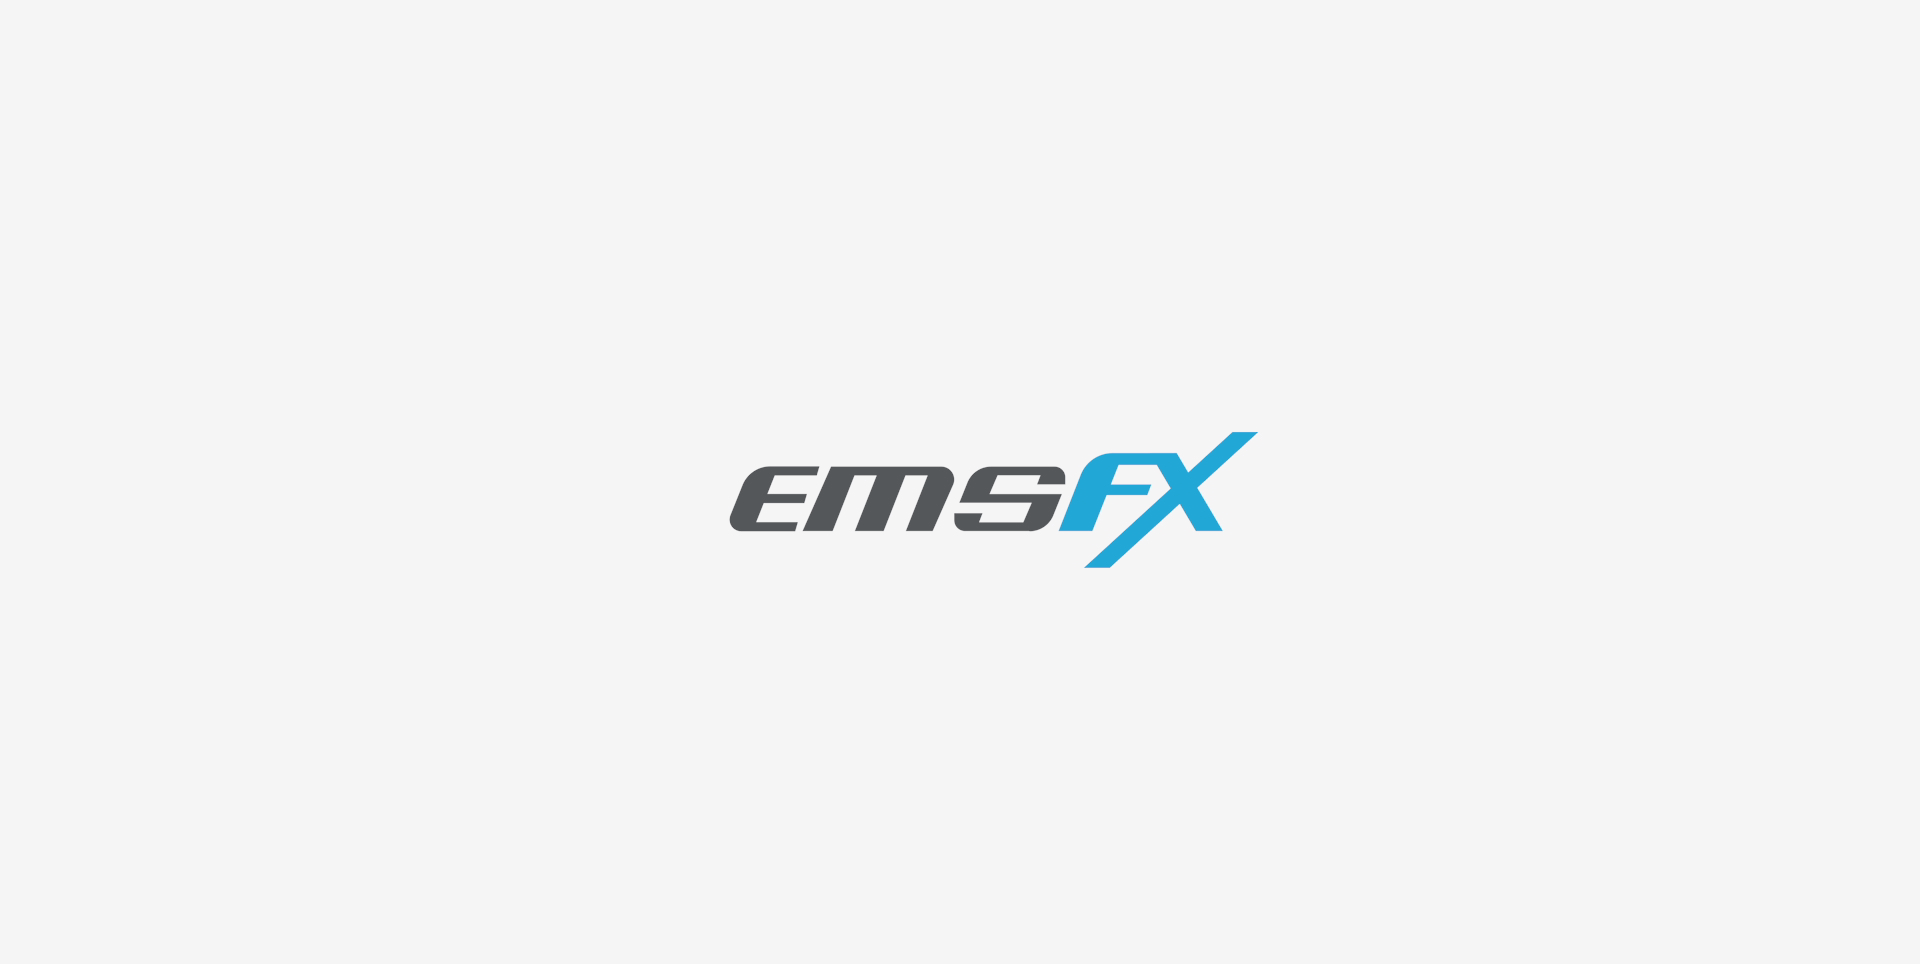 EMSFX